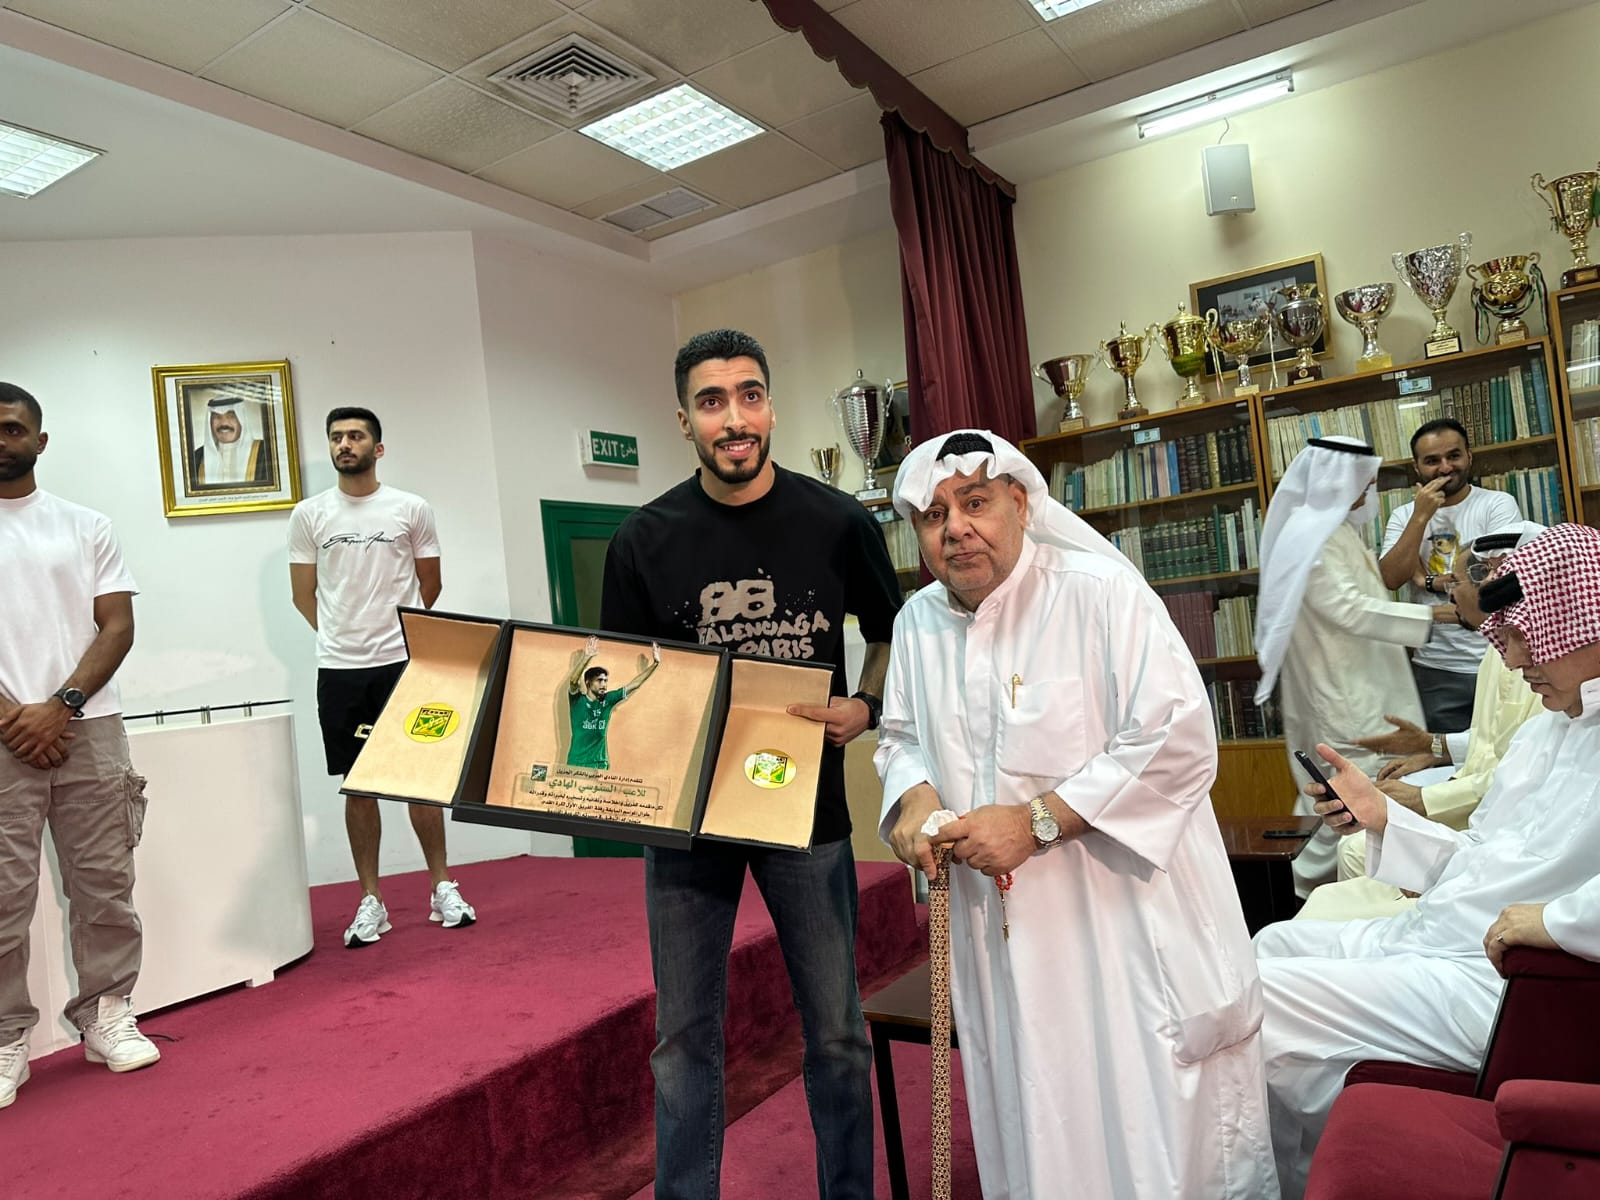 العربي الكويتي يكرم لاعبنا الدولي السنوسي الهادي في إحتفالية الحب والتقدير والعرفان بالعطاء